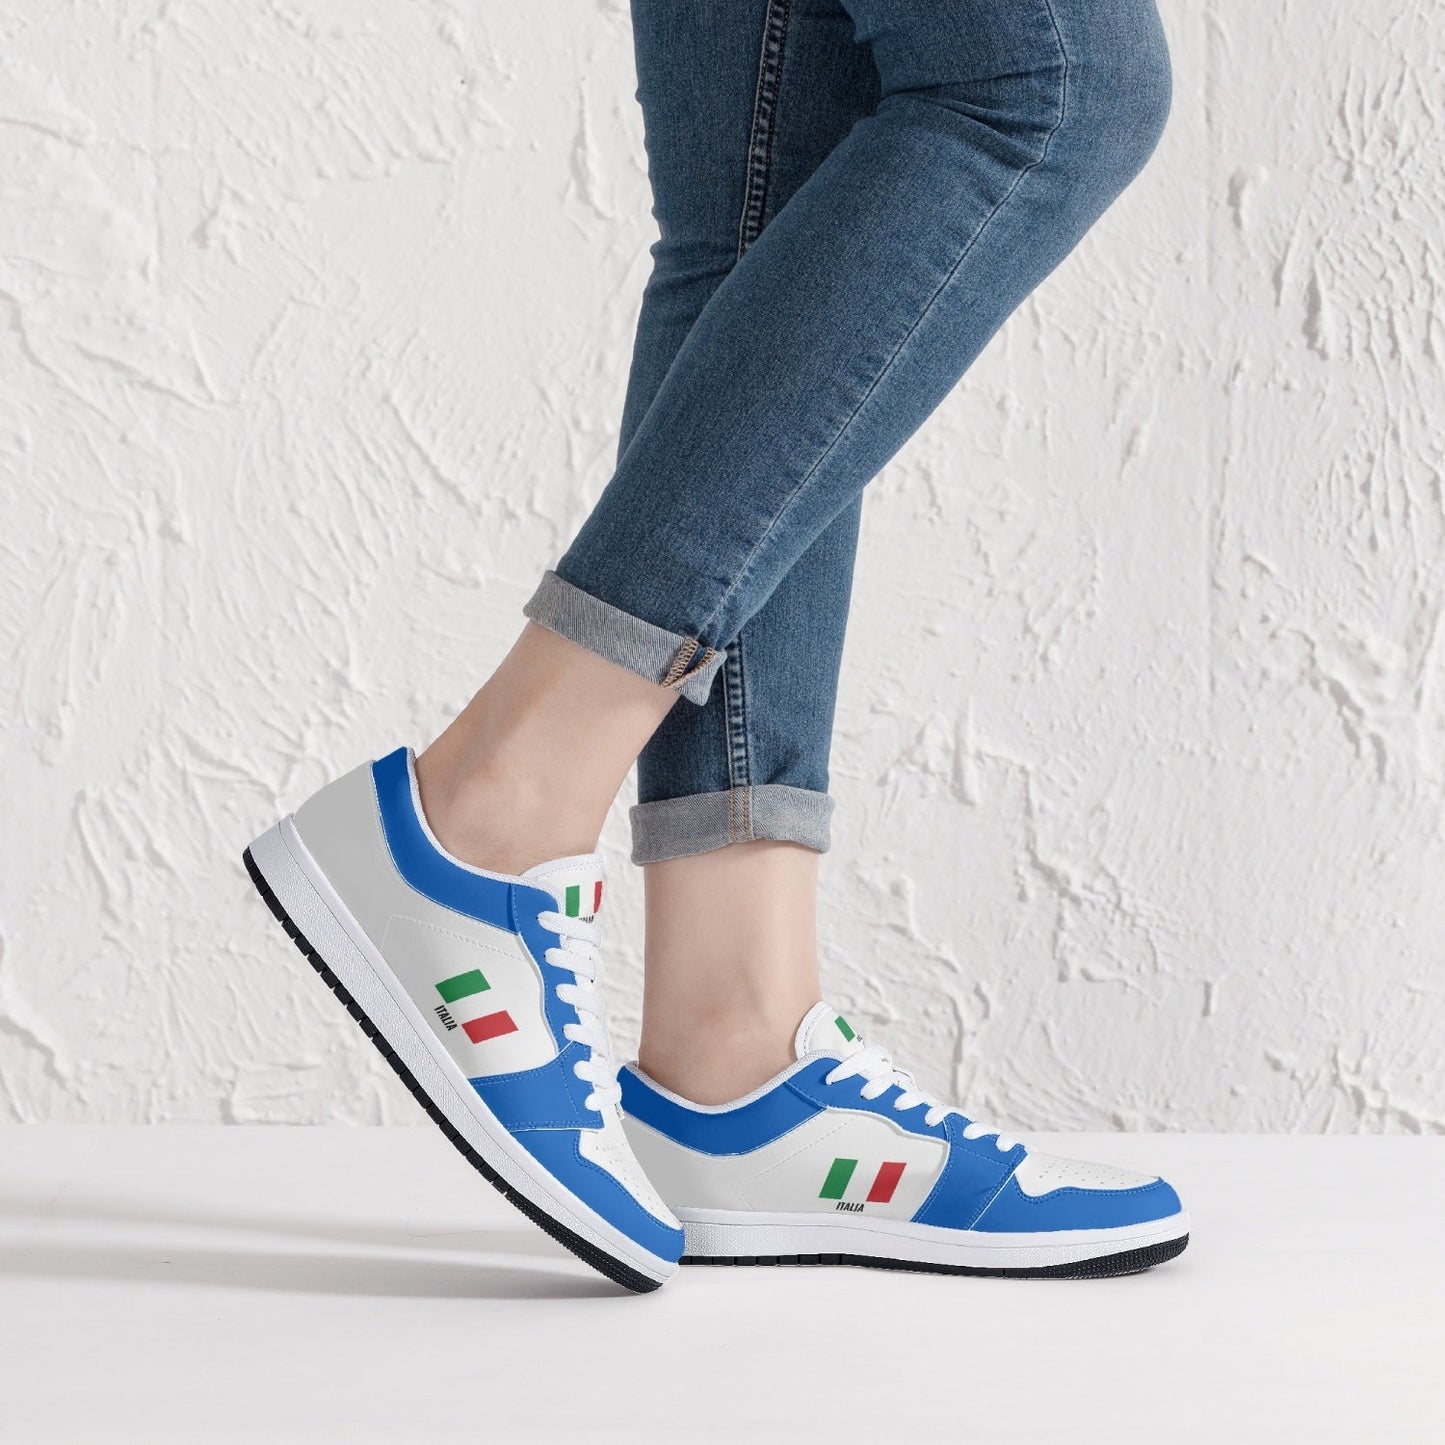 Shoes Sneakers Italia - White/Azure - Women's sizes